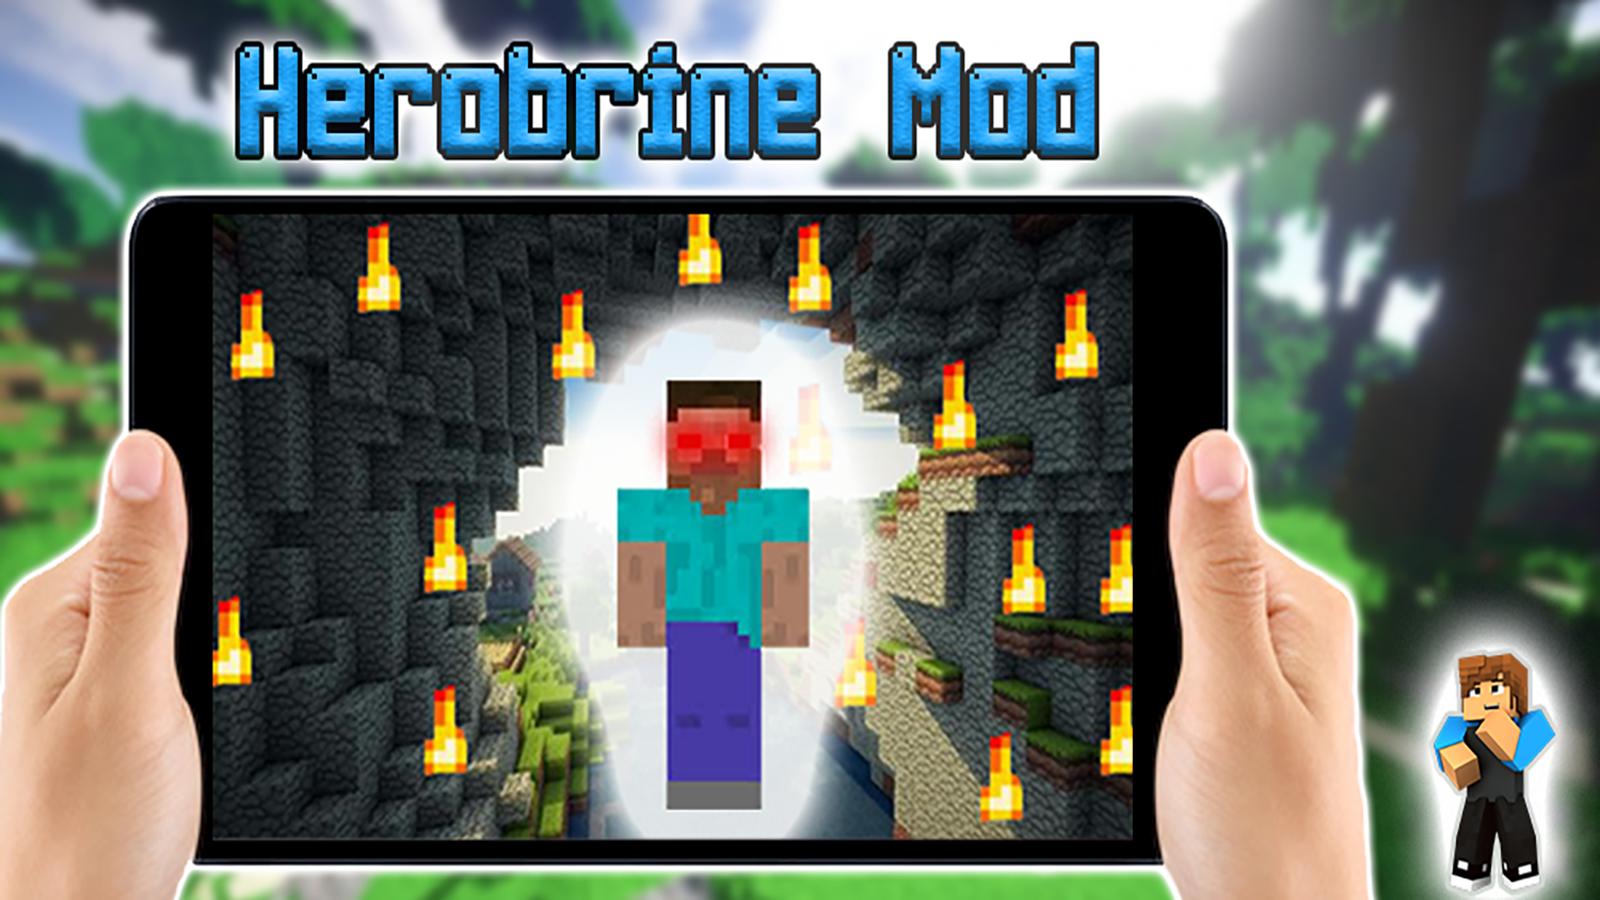 Herobrine Mod For Minecraft Pocket Edition For Android Apk Download - minecraft pocket edition roblox youtube herobrine